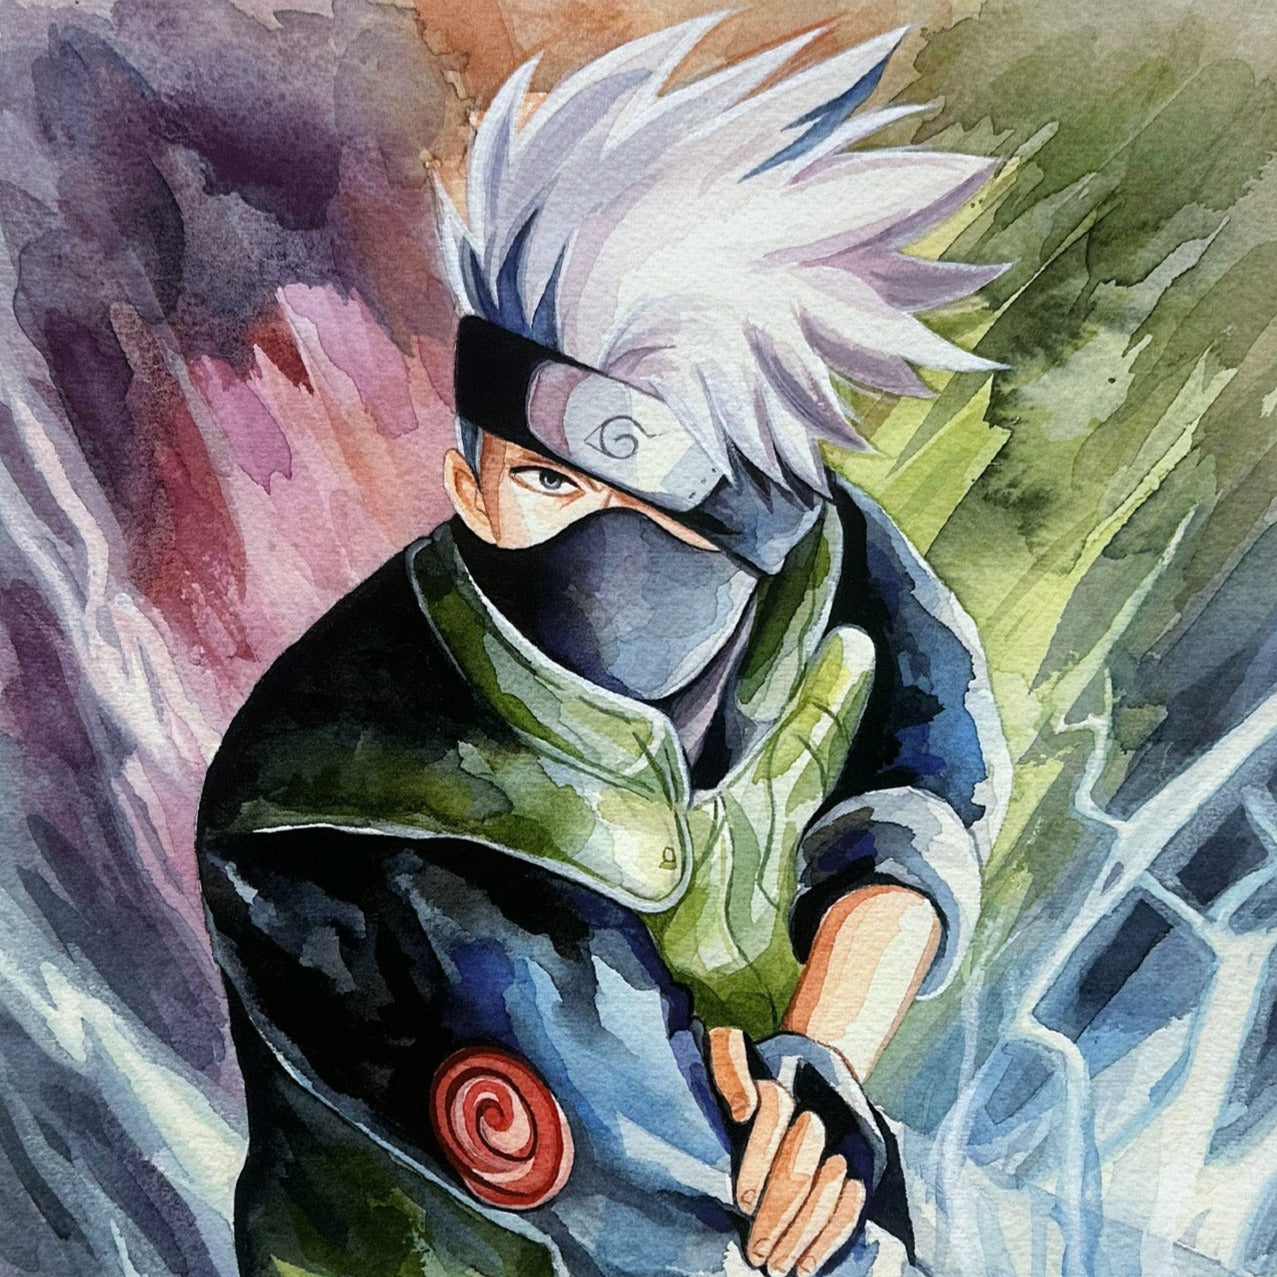 Kakashi "Copy Ninja" Naruto Shippuden Watercolor Art Print